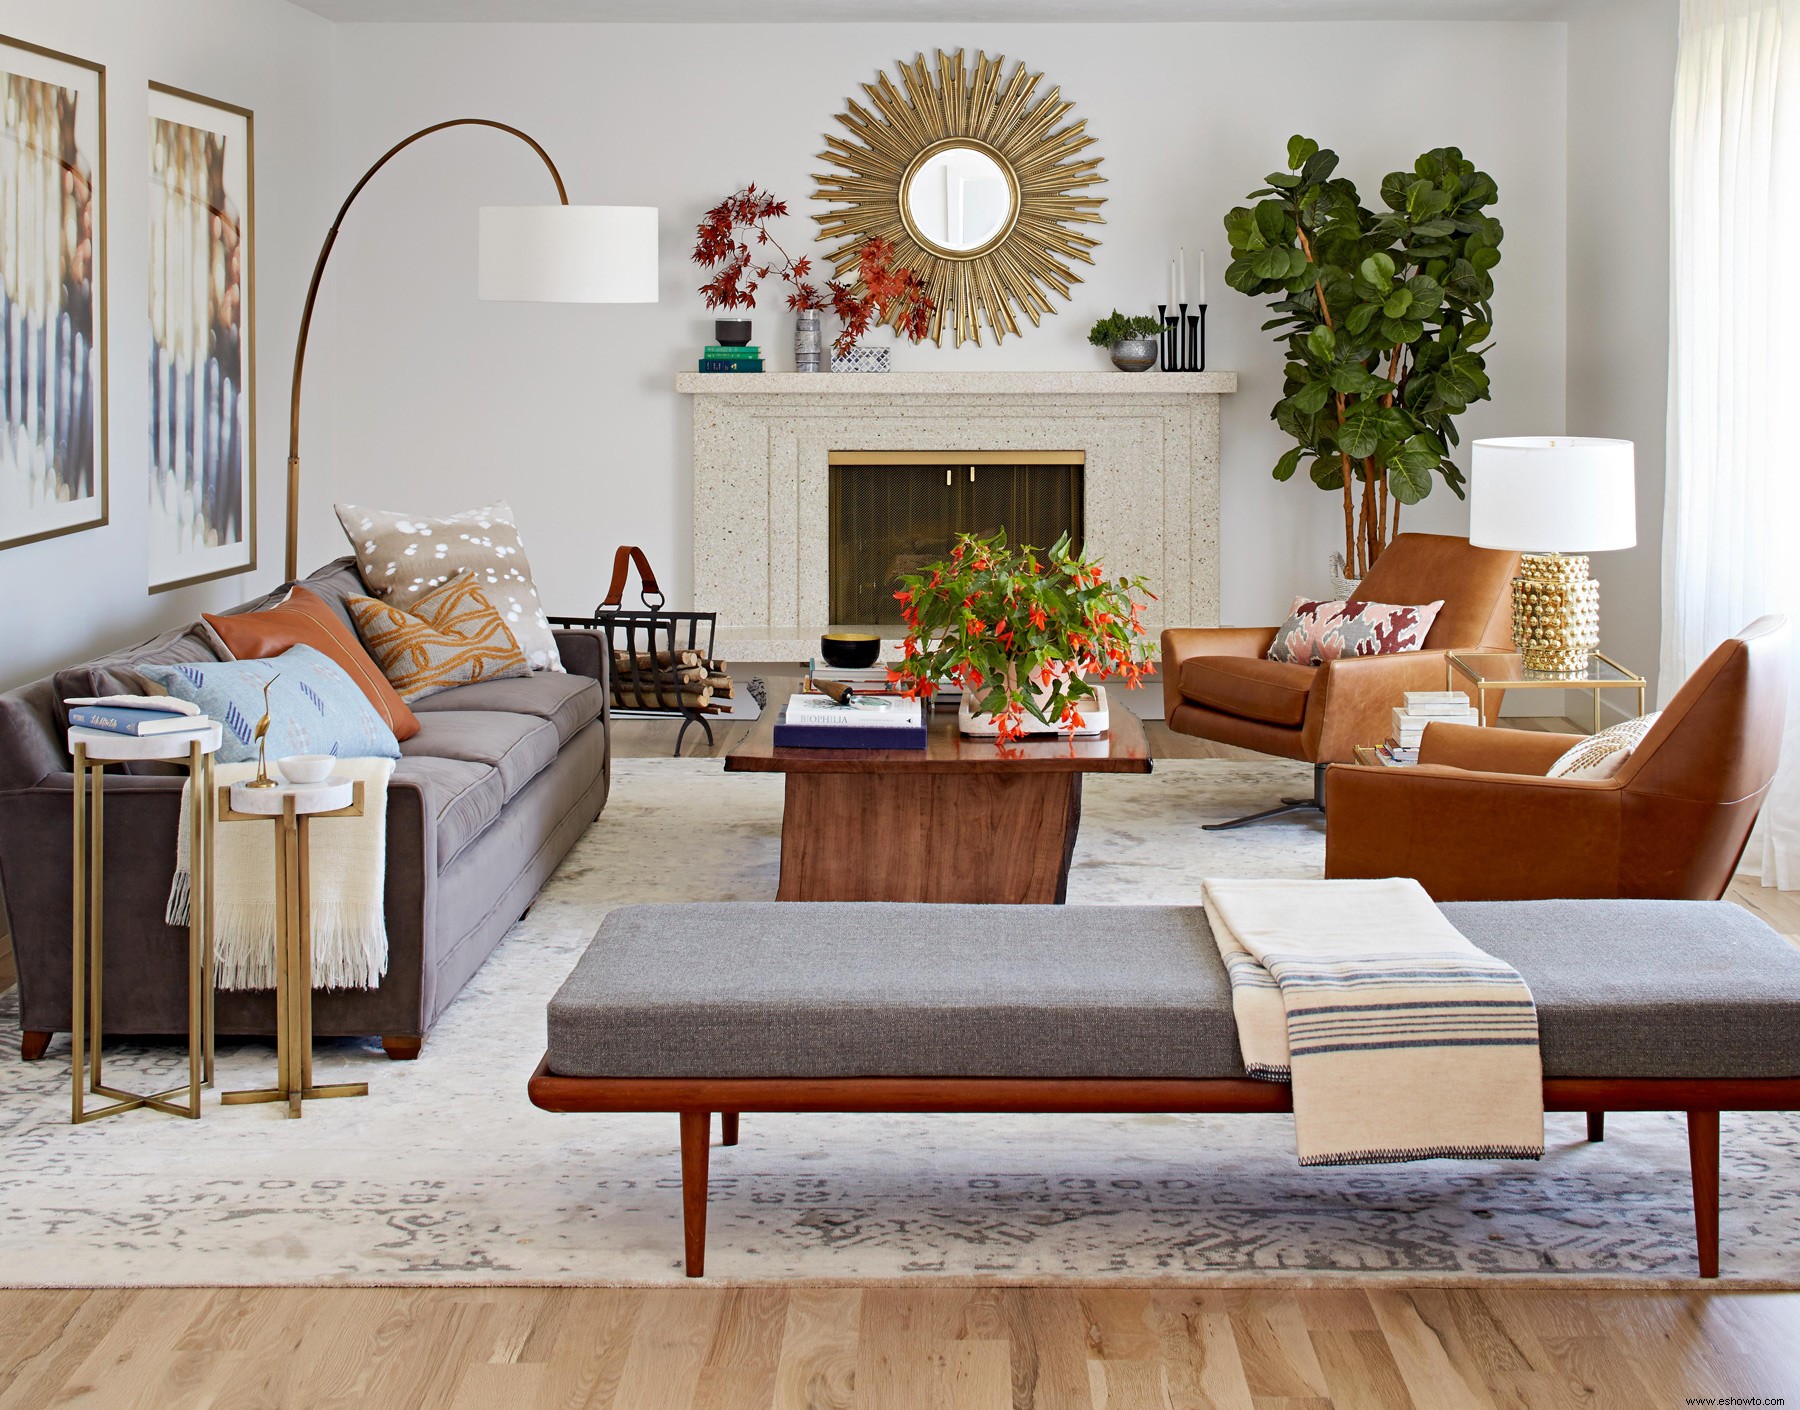 Los divanes son la tendencia de decoración más acogedora de 2020:aquí hay 6 diseños que amamos 